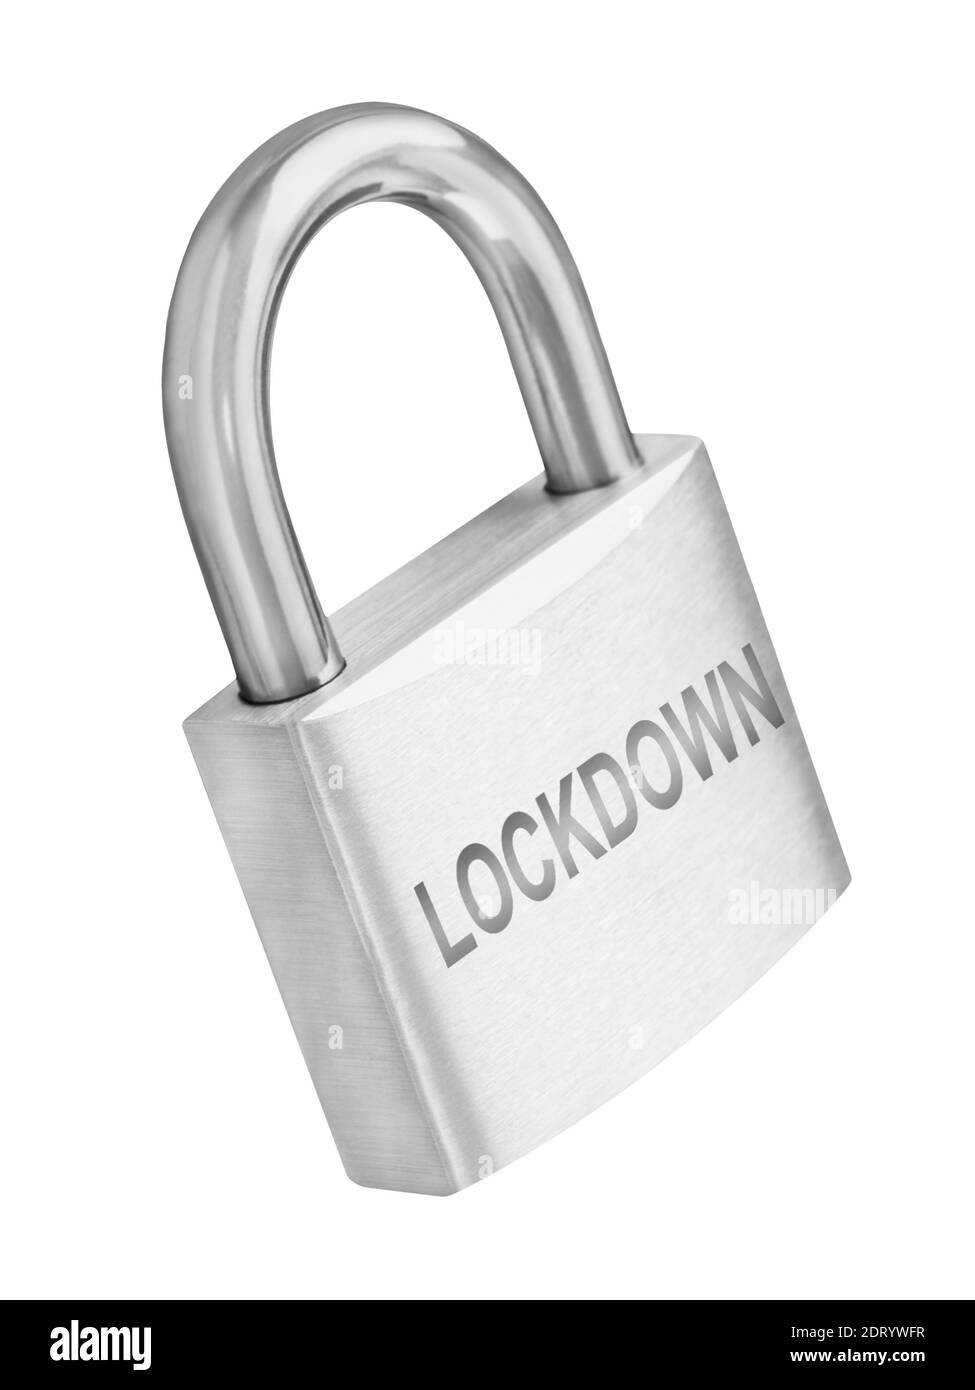 Lucchetto Lockdown isolato su sfondo bianco Foto Stock